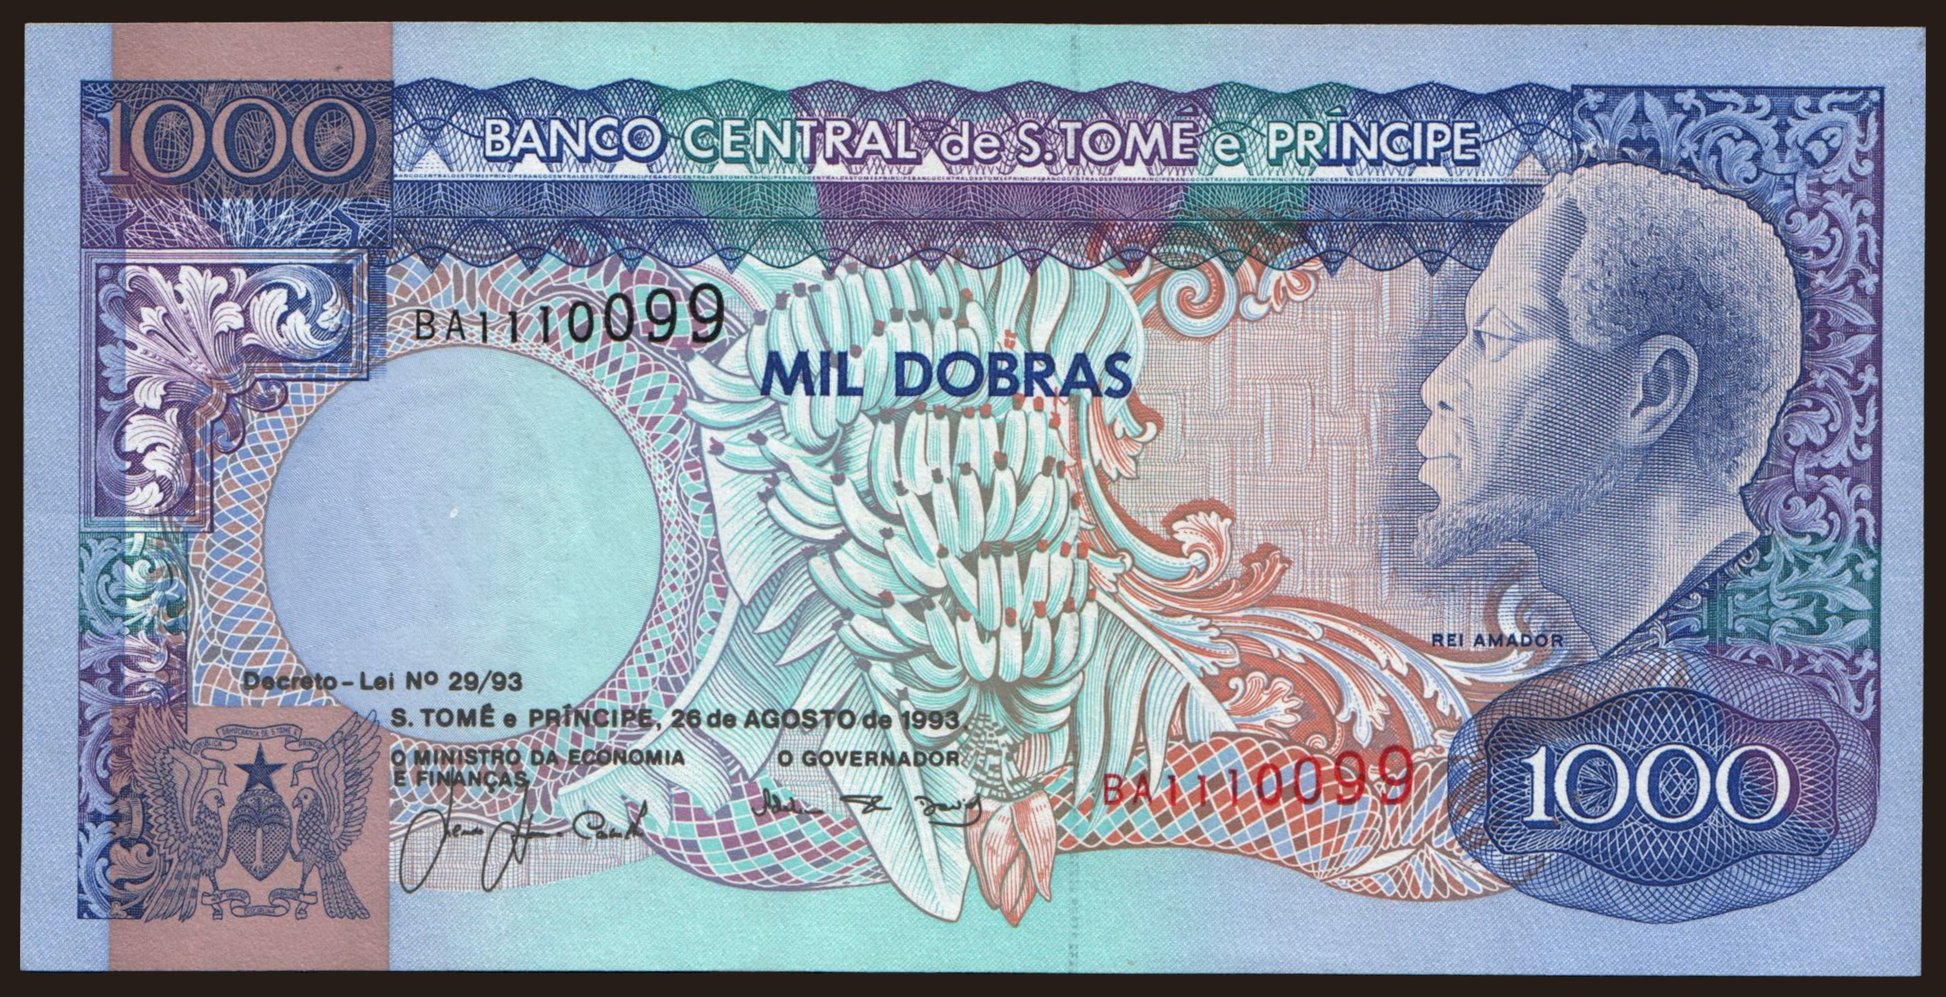 1000 dobras, 1993